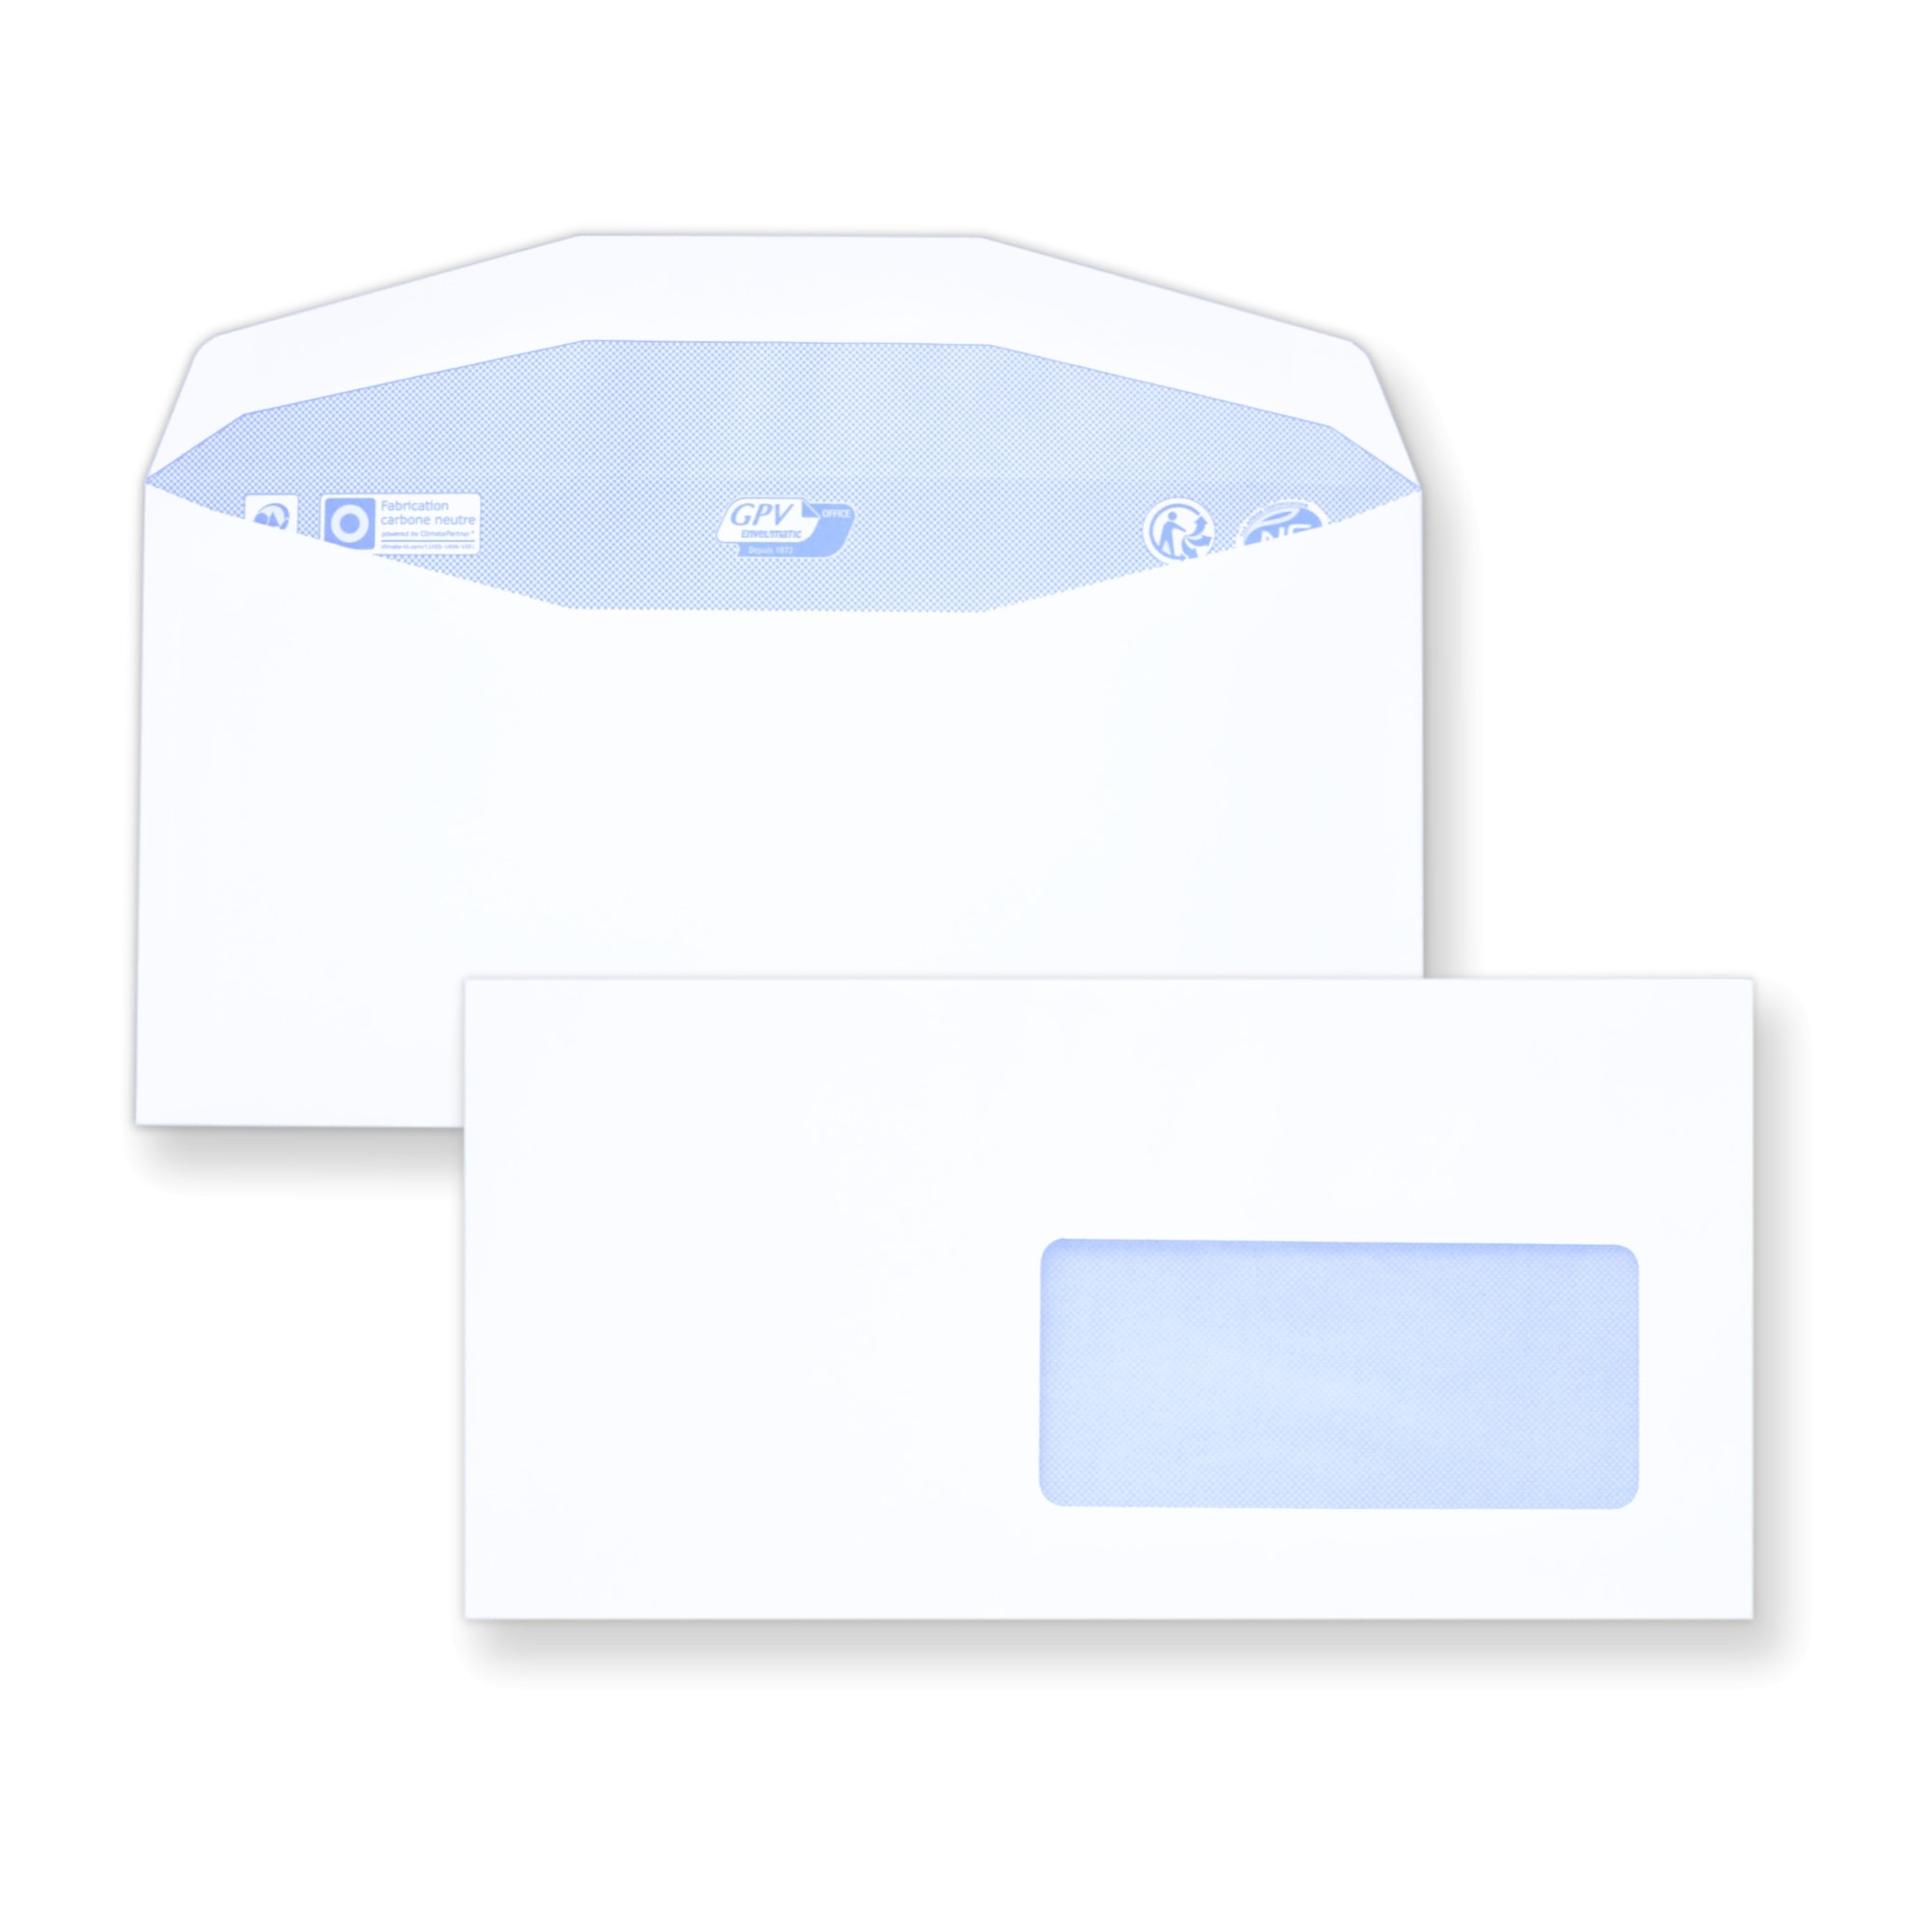 Enveloppes c6/5 gommées avec fenêtre à droite - RETIF